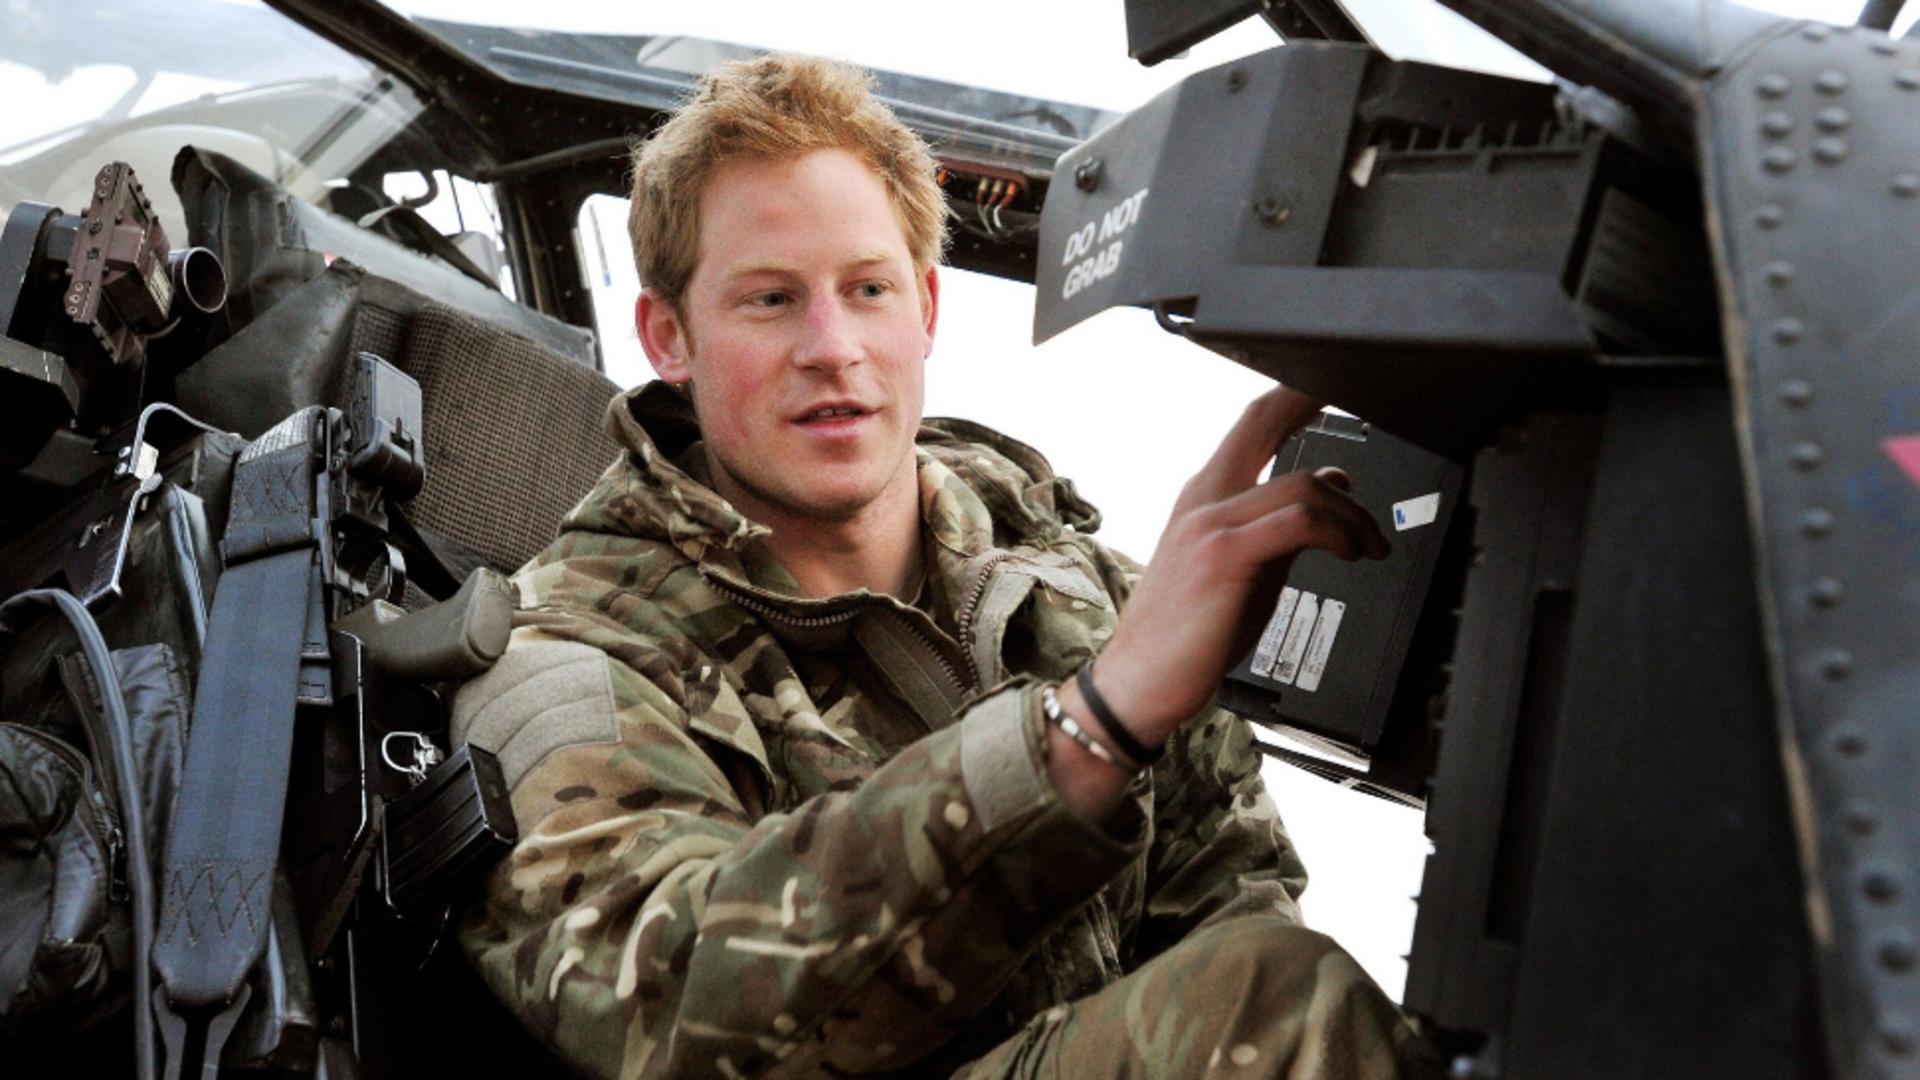 Harry a fost pilot de elicopter în Afganistan. Foto/Profimedia